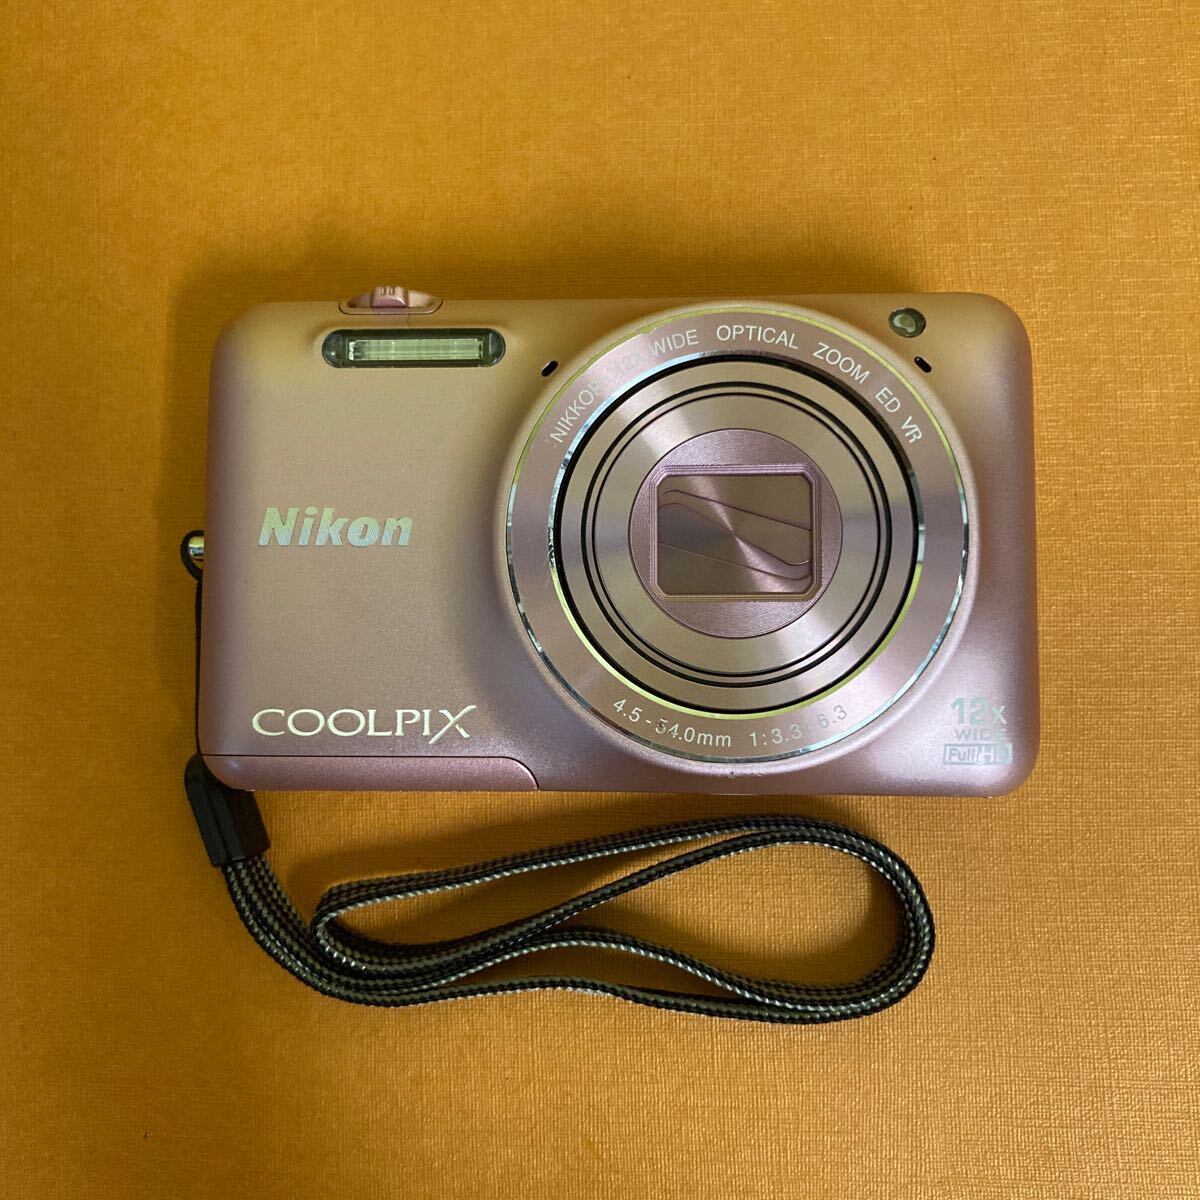 Nikon ニコン COOLPIX コンパクトデジタルカメラ S6600クールピクス シルキーピンクバッテリー付属 の画像1